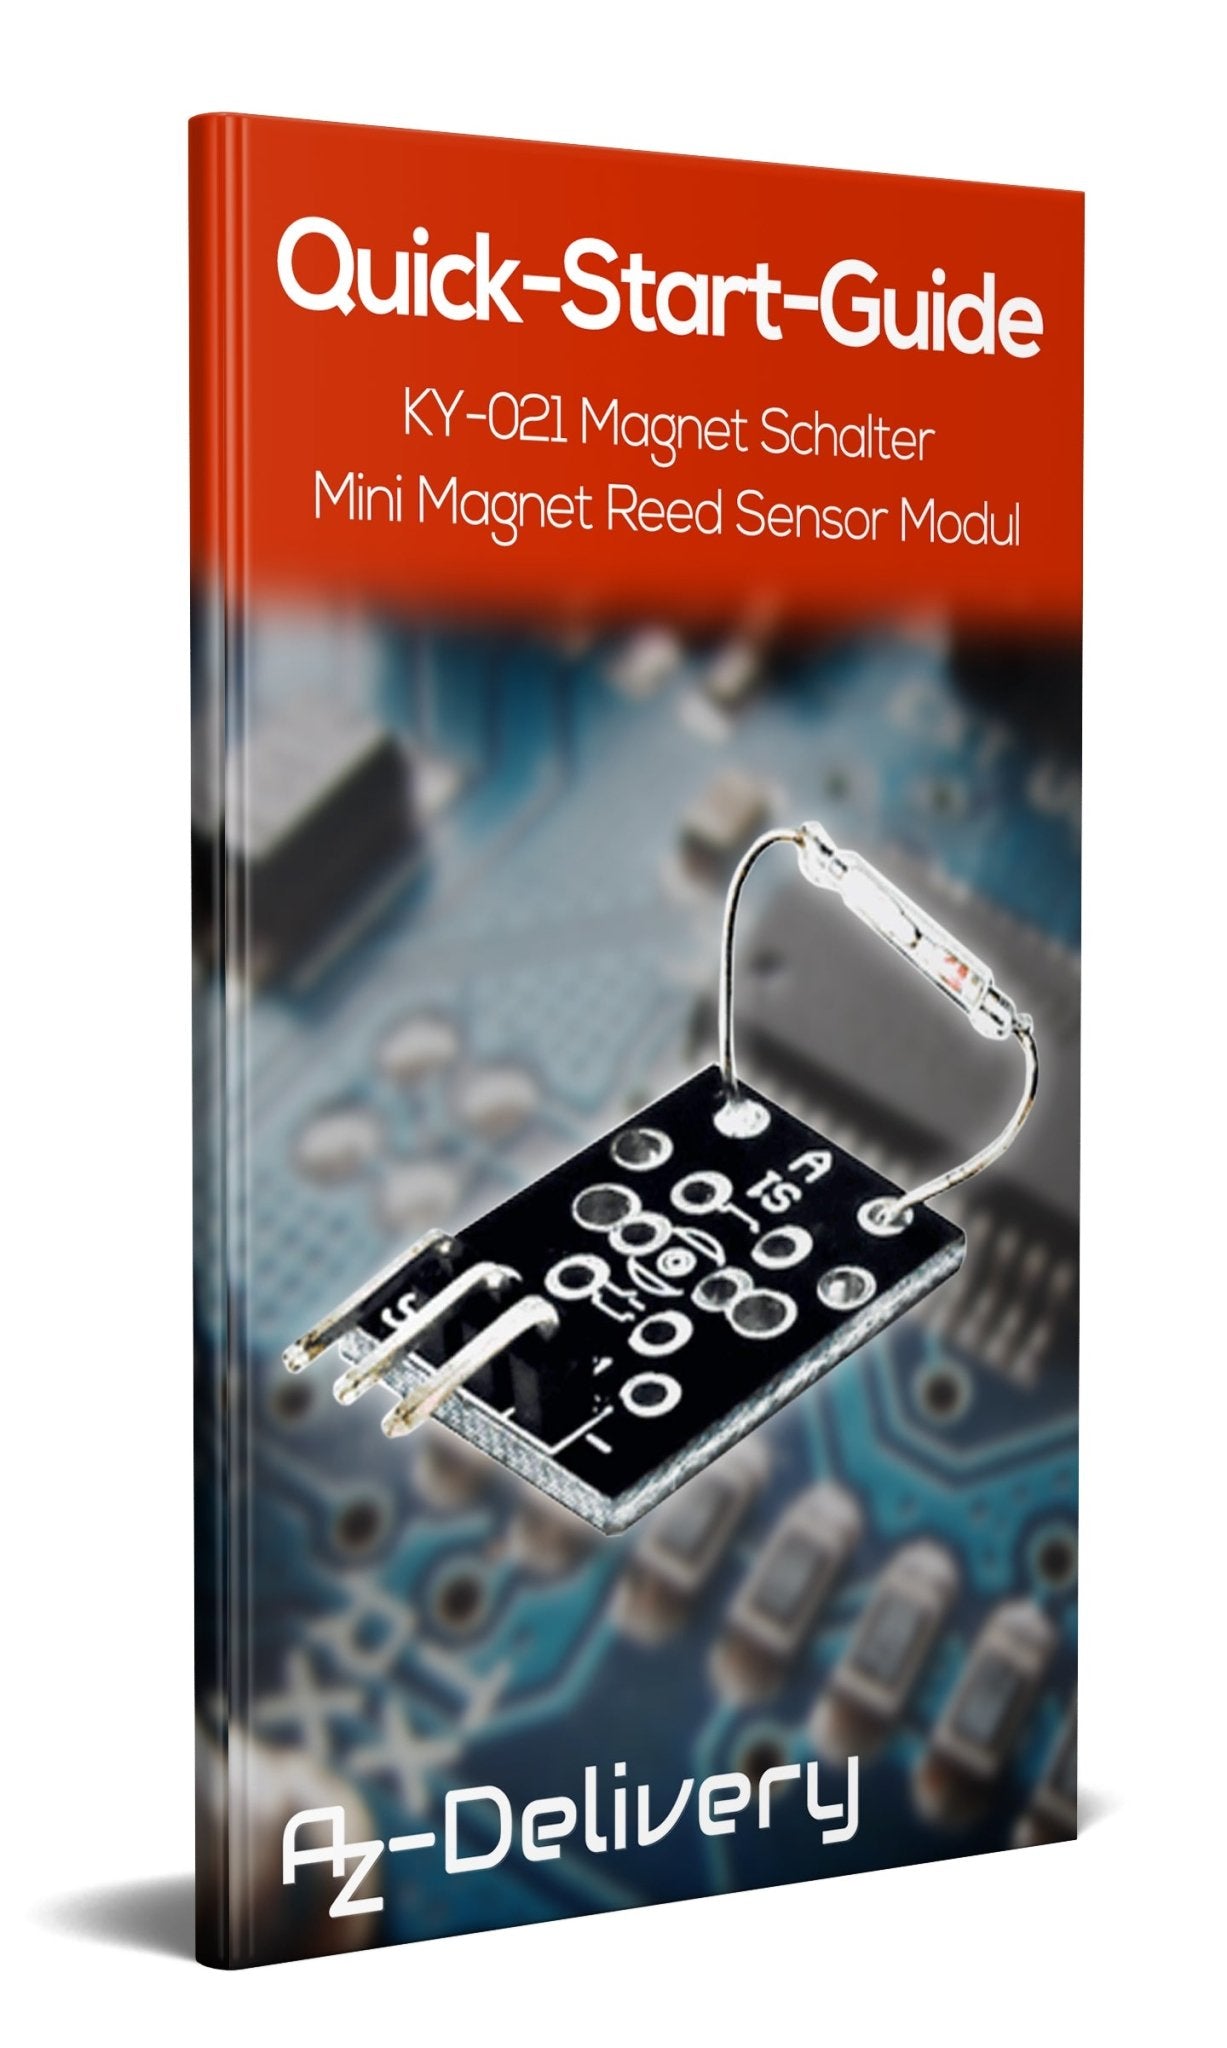 KY-021 Magnet Schalter Mini Magnet Reed Modul Sensor - AZ-Delivery